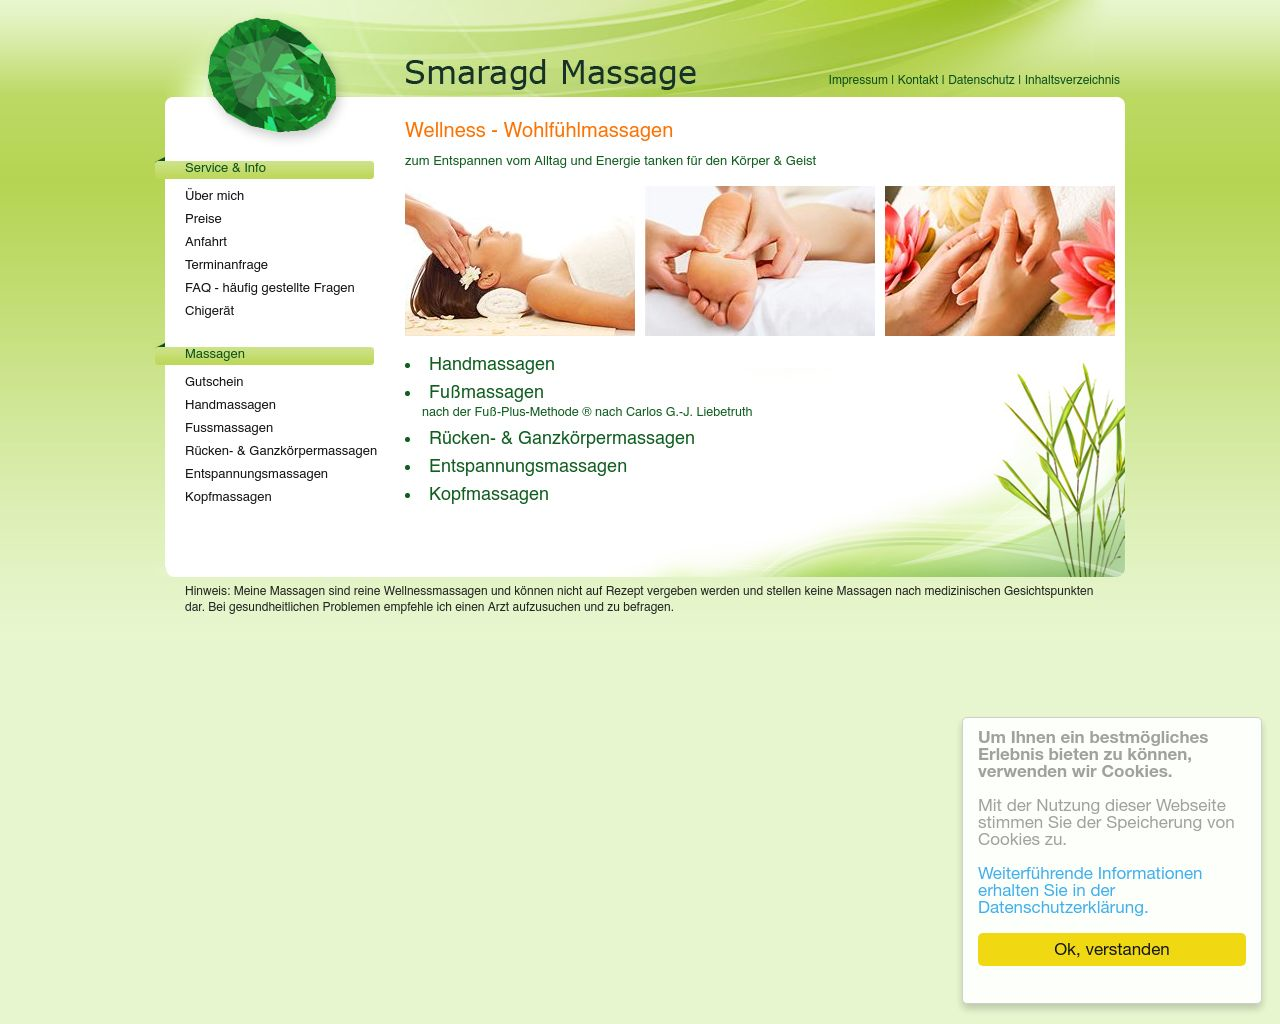 Bild Website smaragd-massage.de in 1280x1024